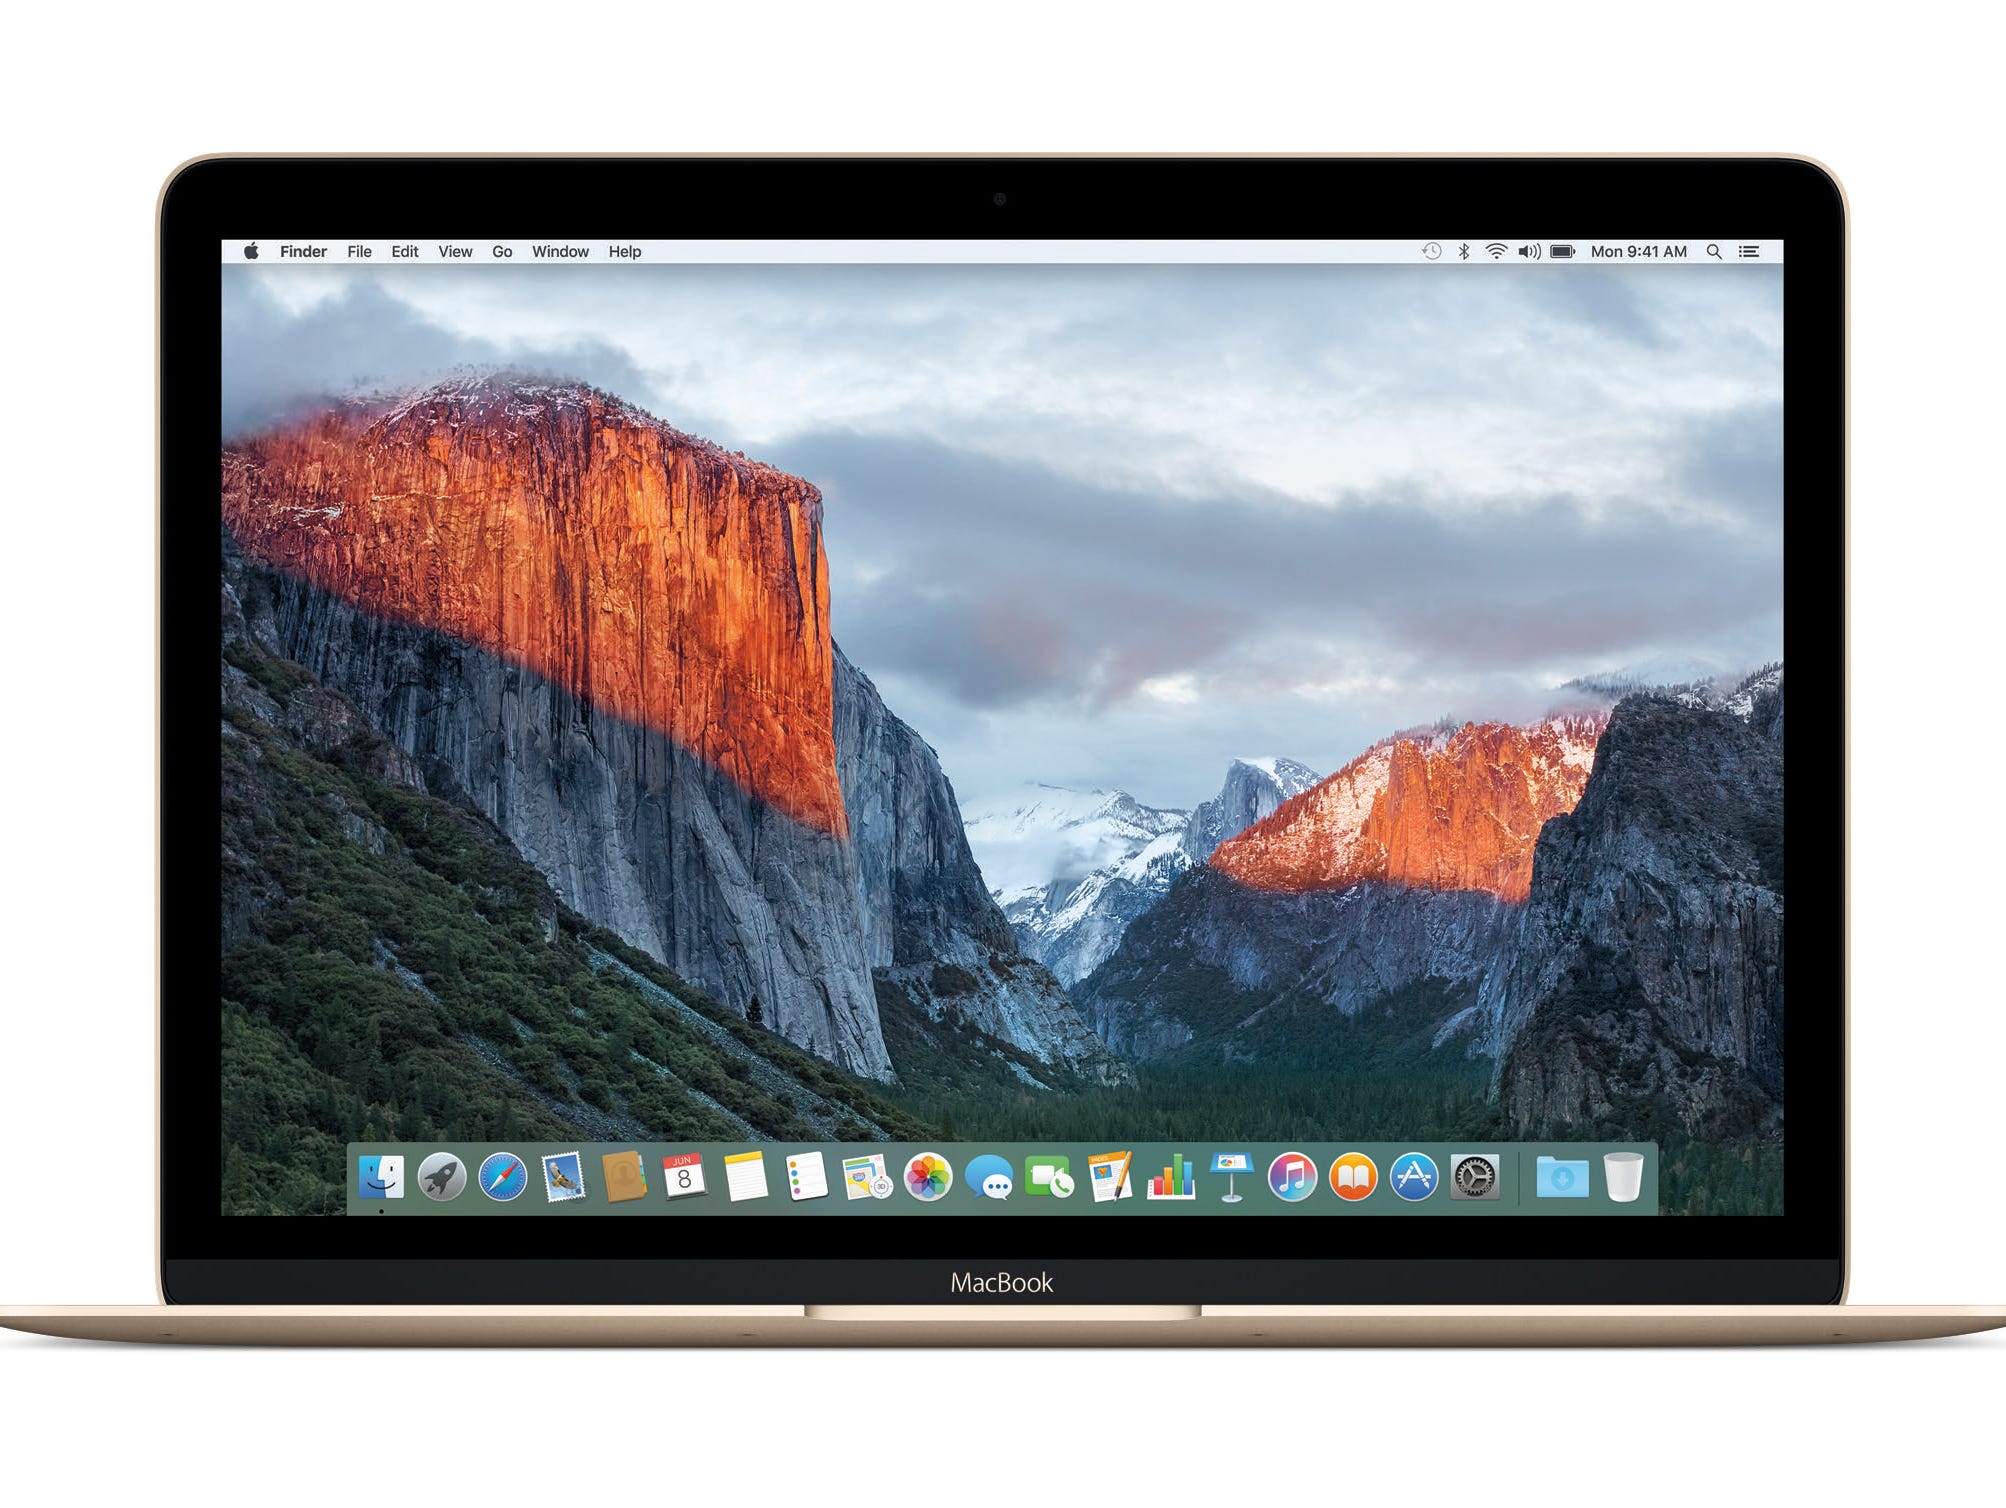 A MacBook computer shows off OS X El Capitan